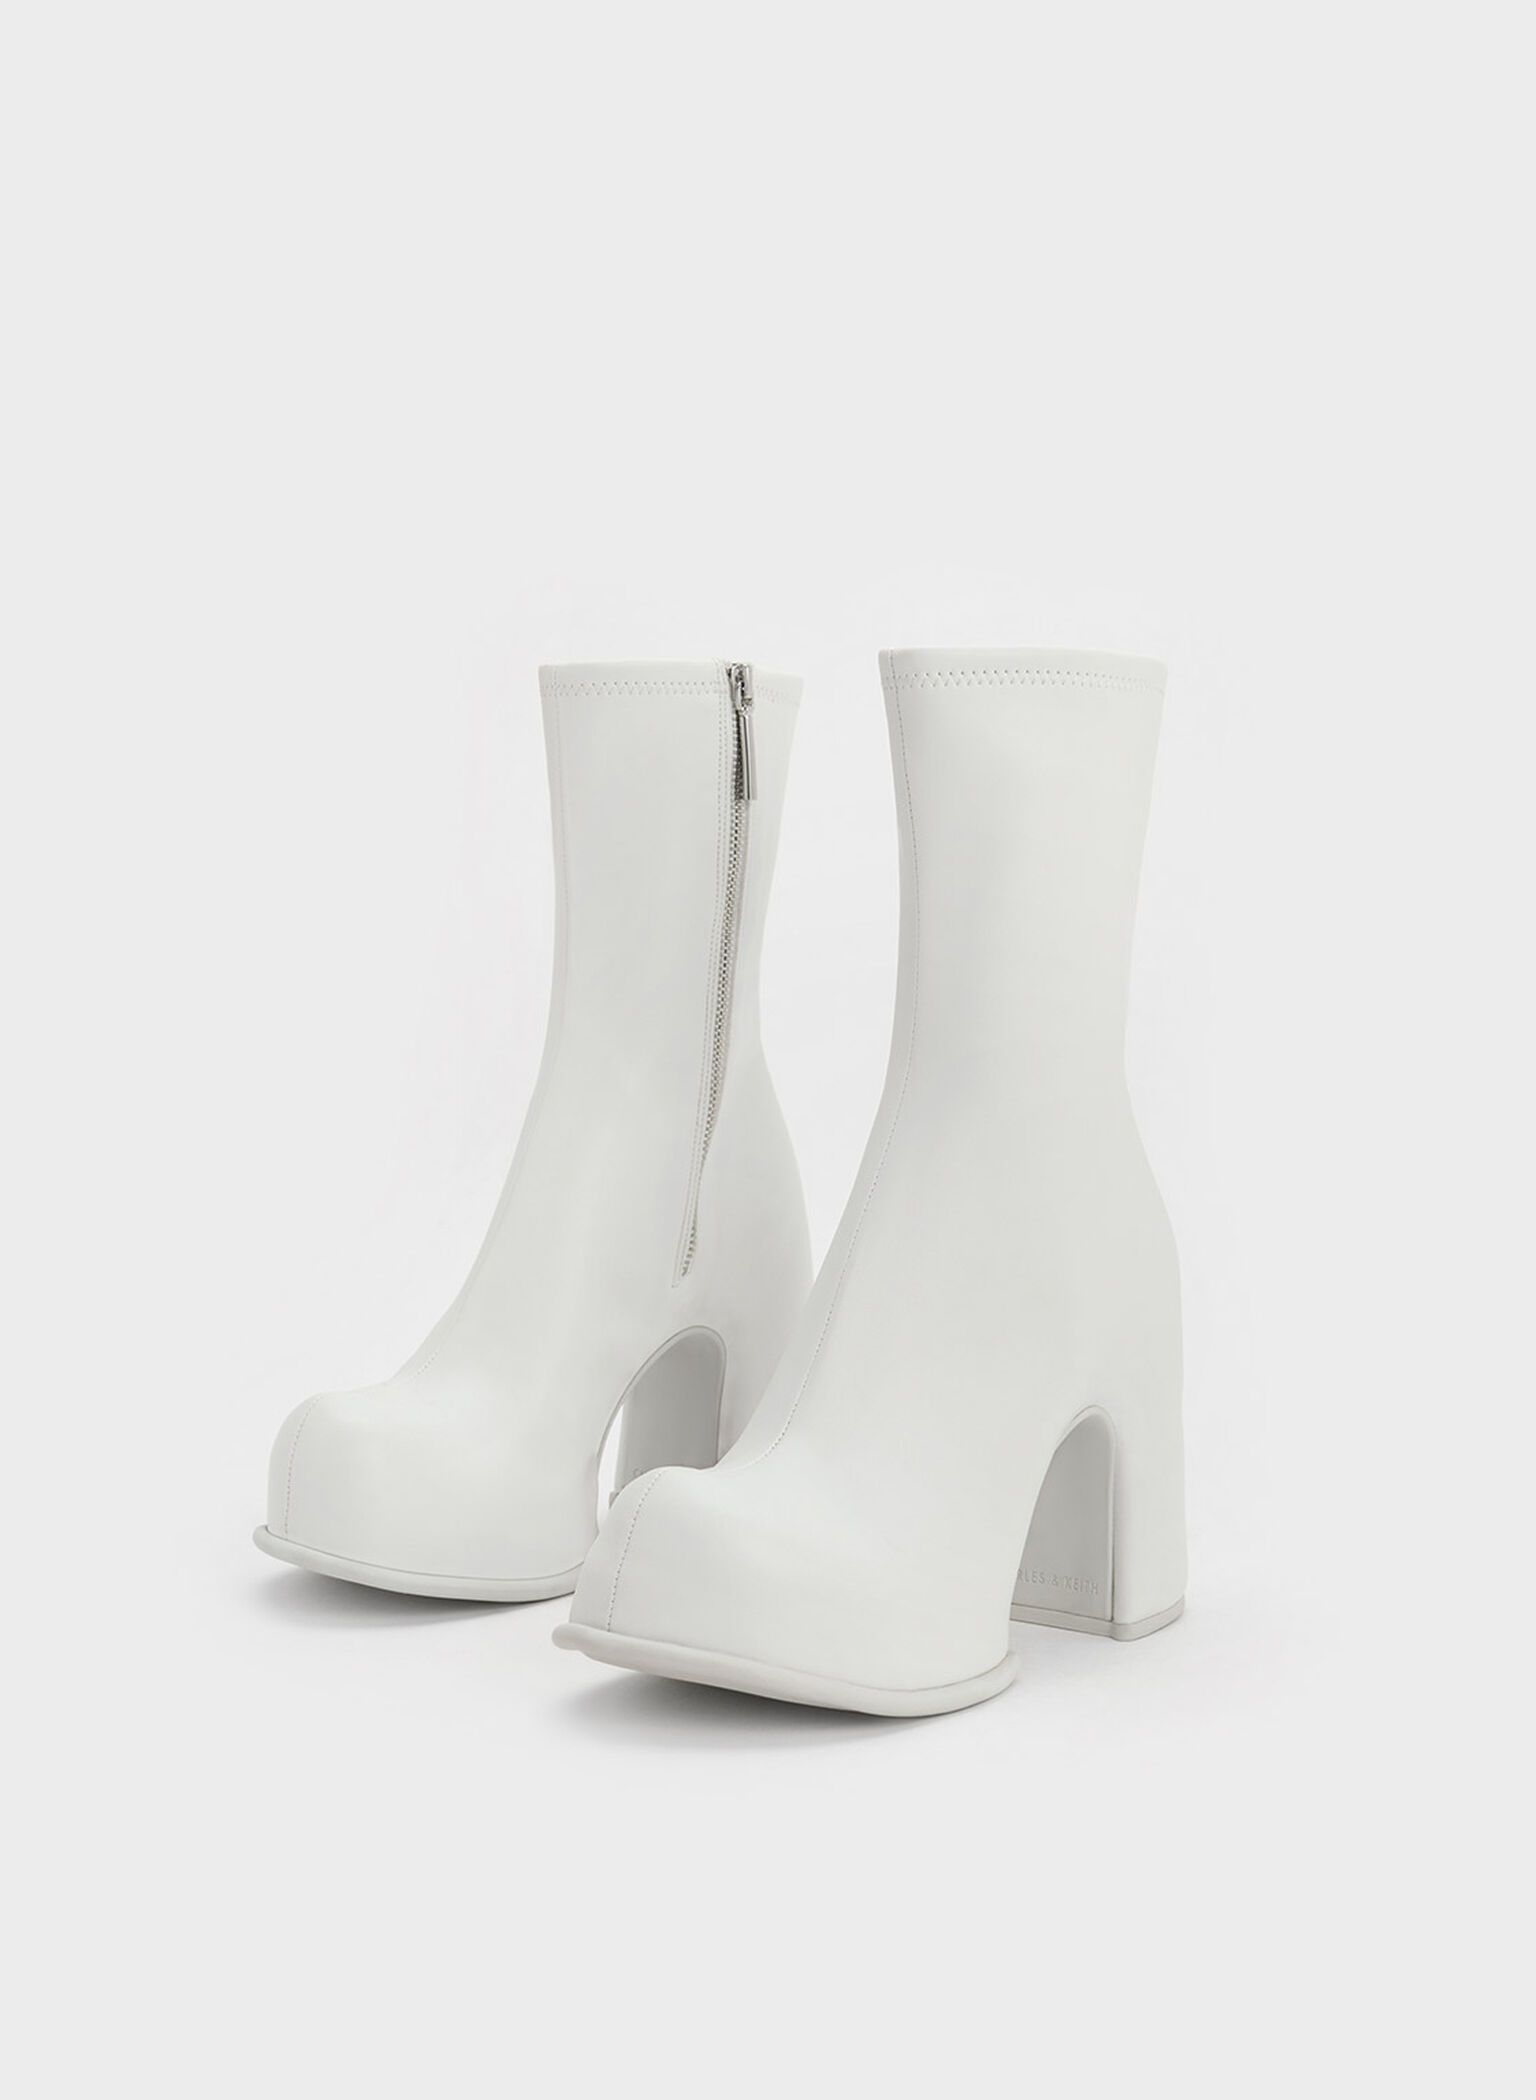 Pixie Platform Ankle Boots, White, hi-res